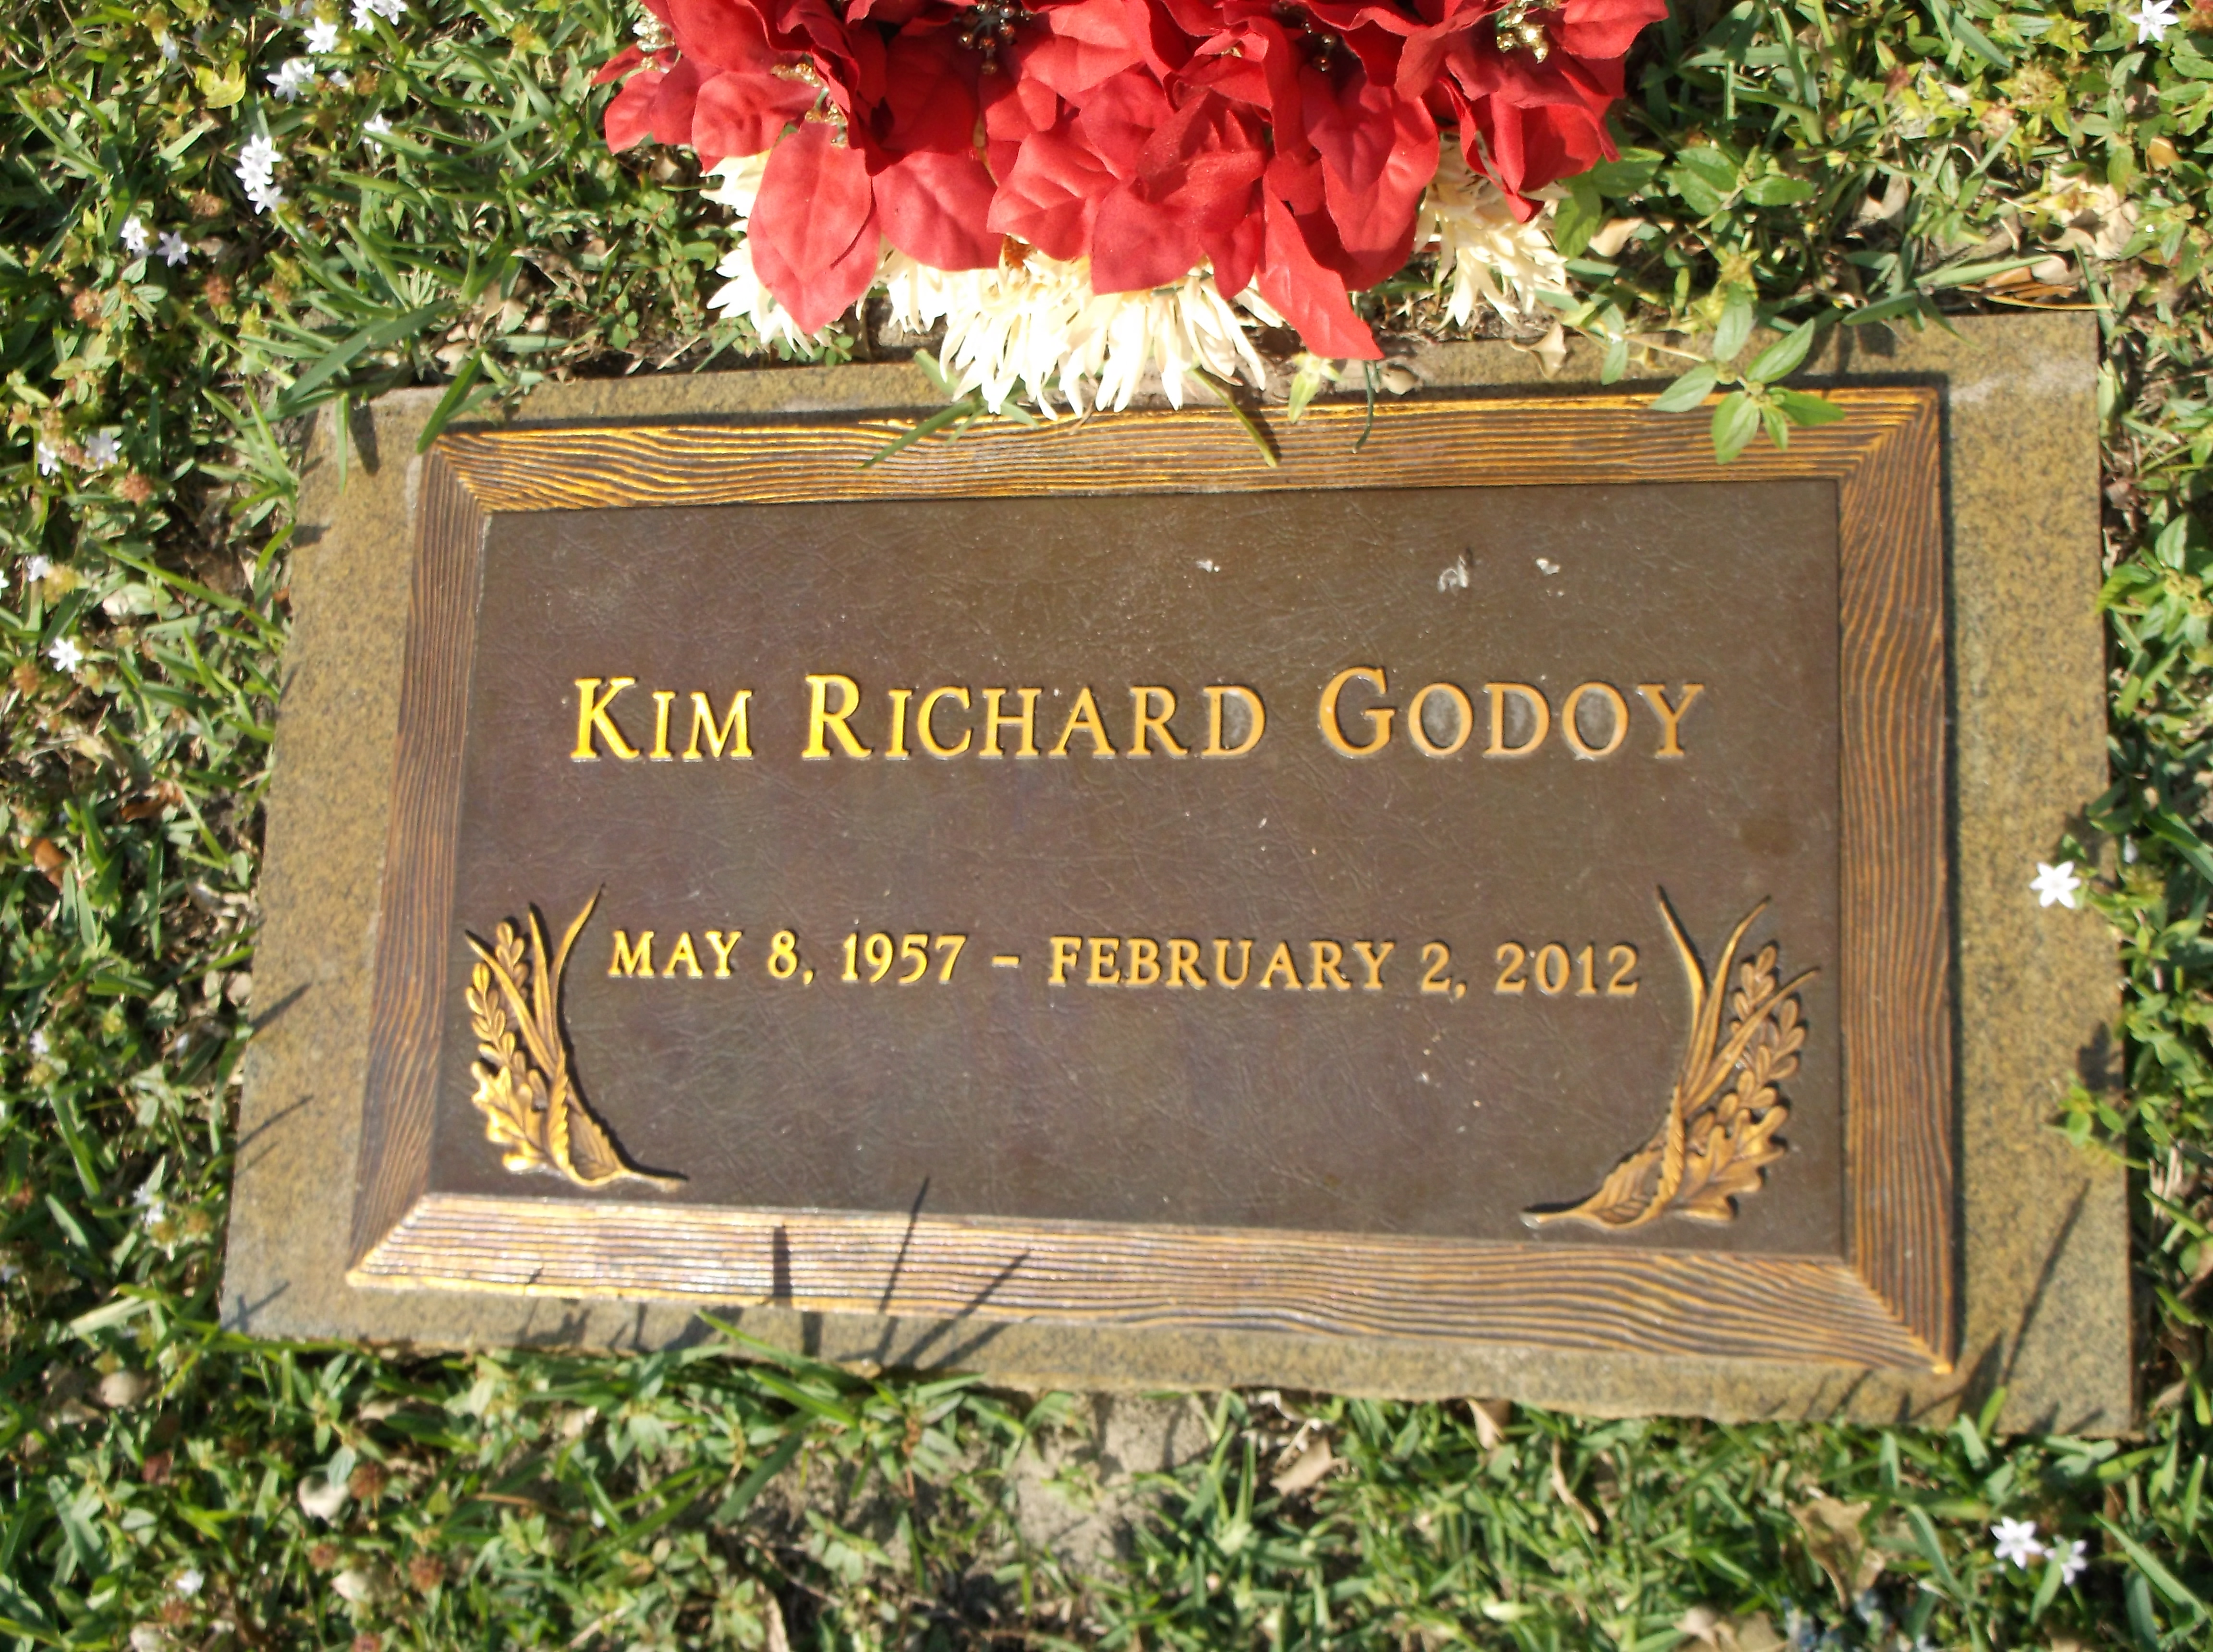 Kim Richard Godoy